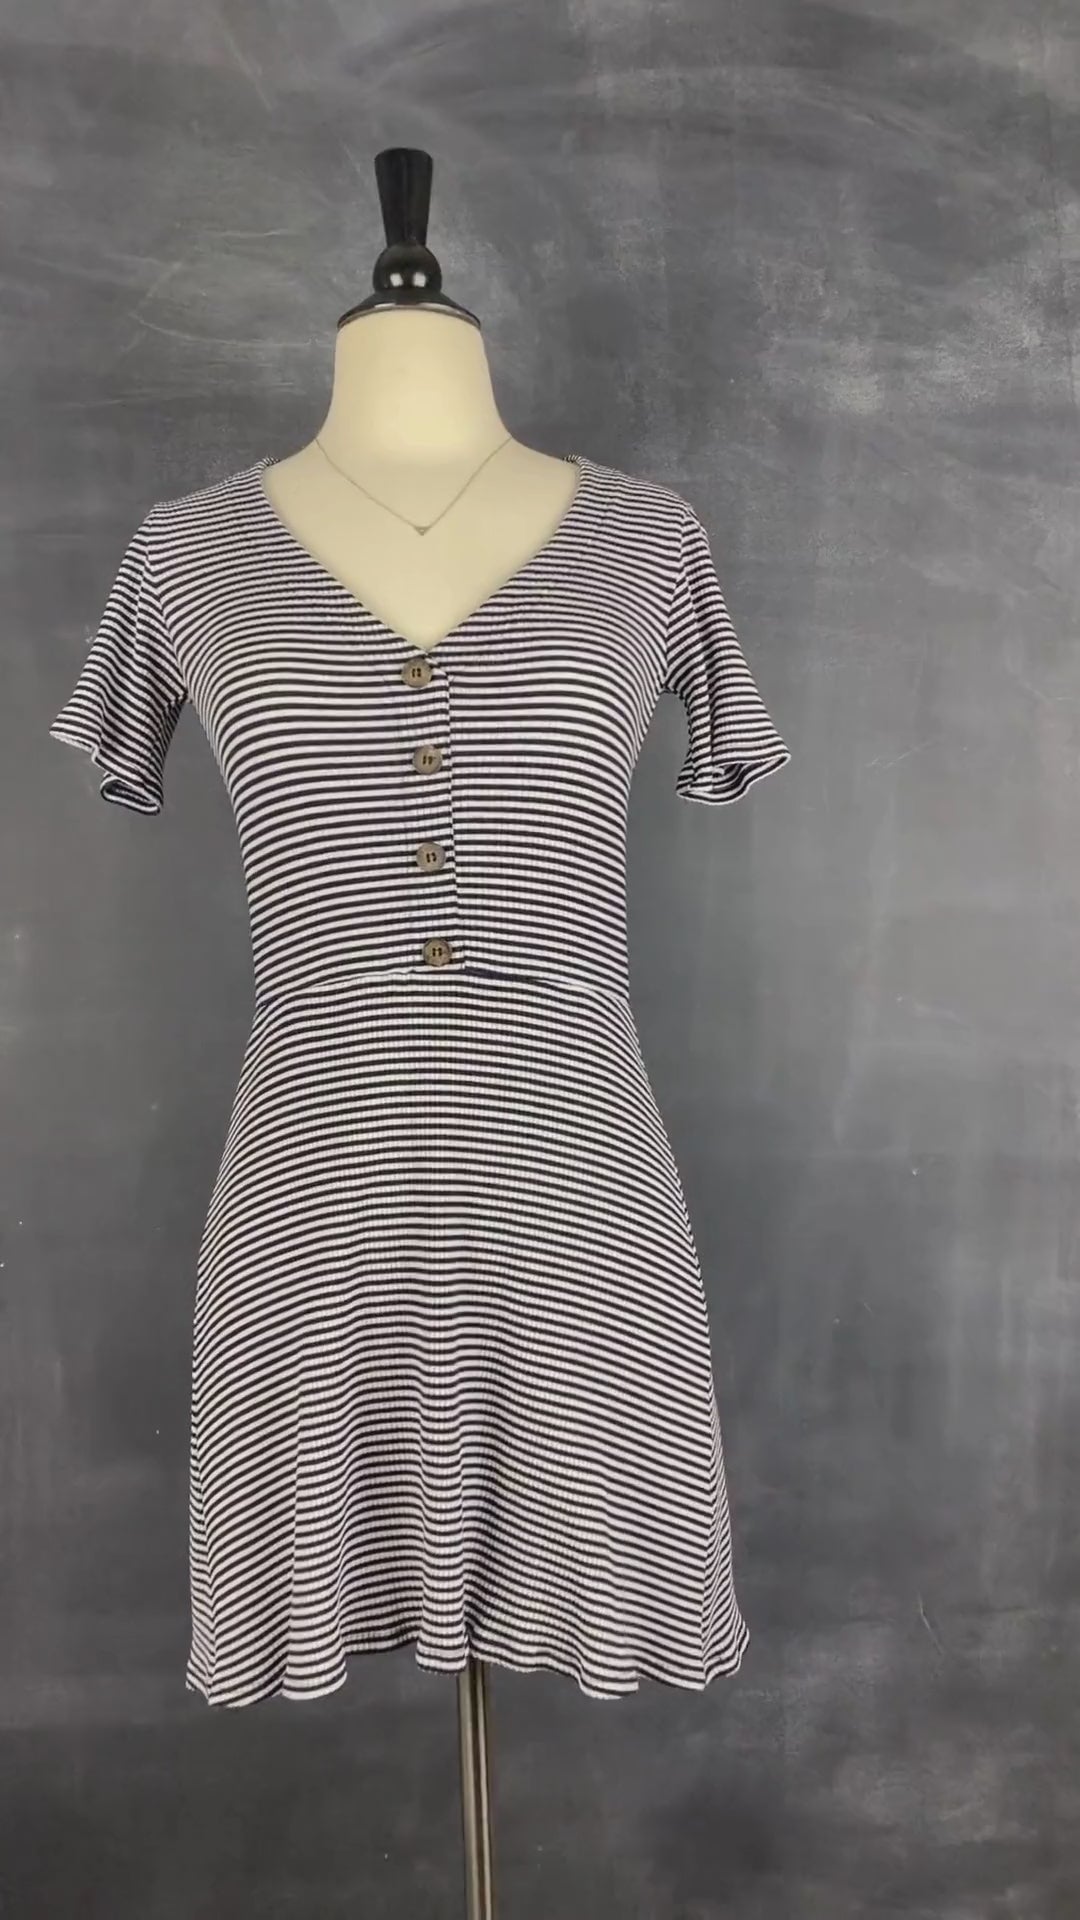 Robe rayée extensible Reformation, taille xs-s. Vue de la vidéo qui présente tous les détails de la robe.